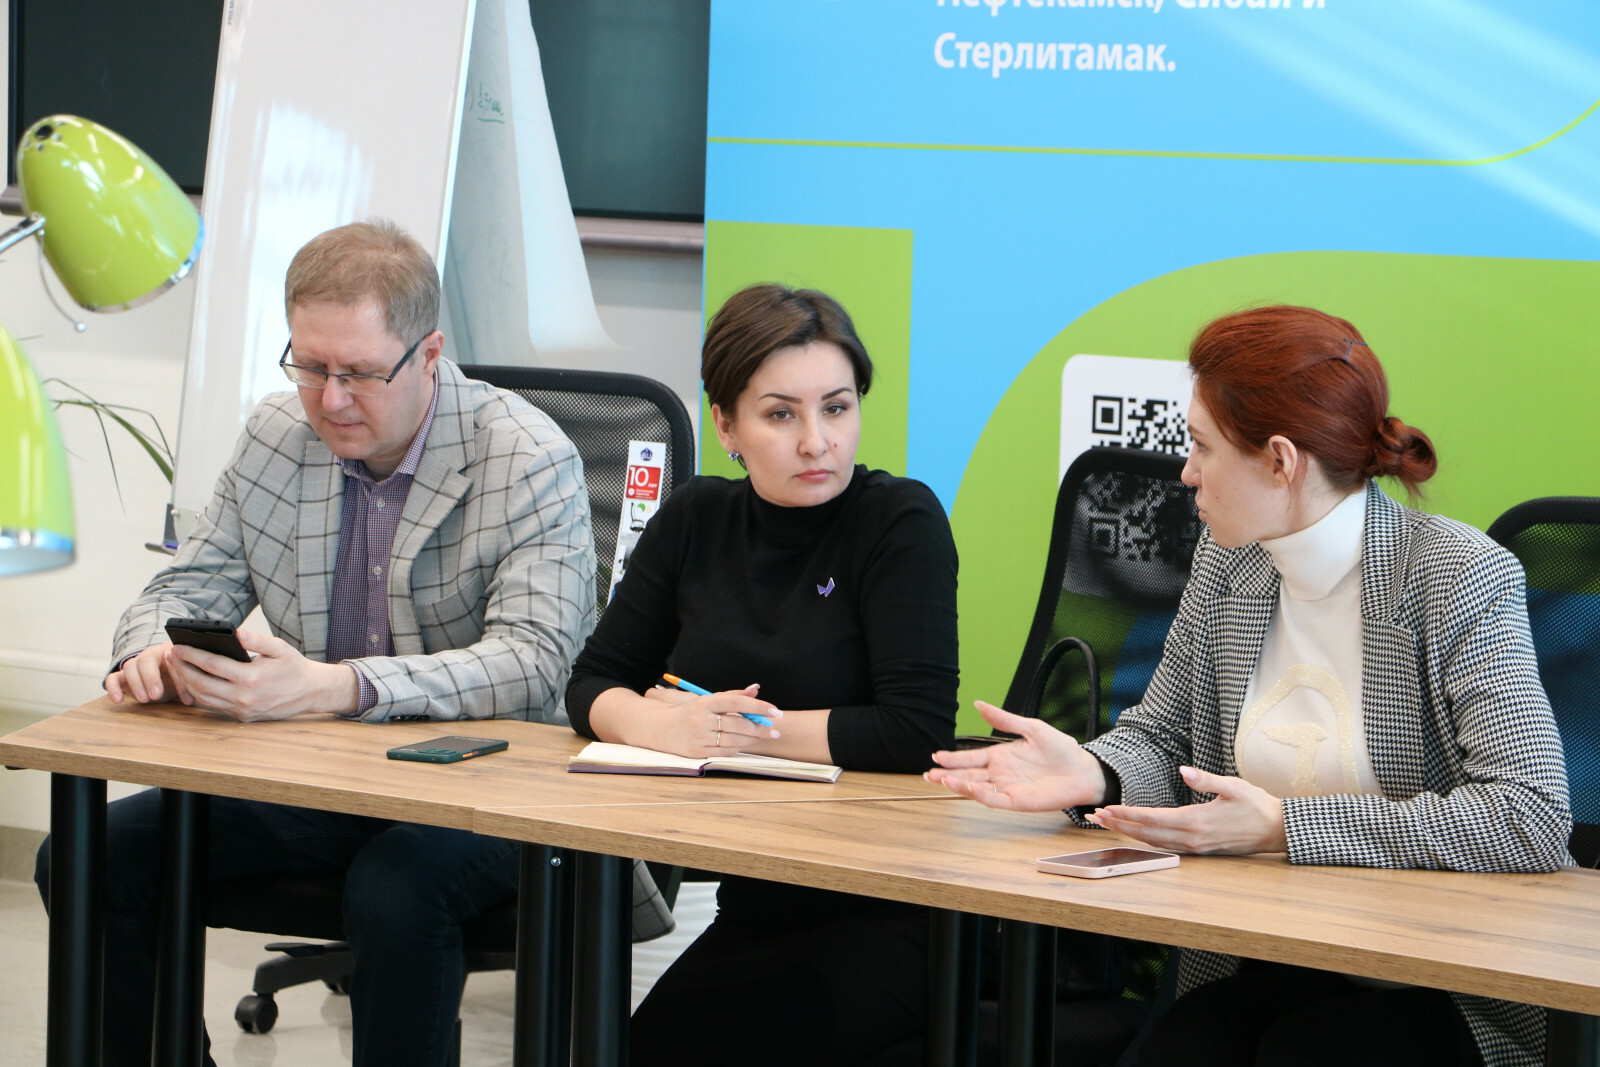 Евразийский НОЦ будет развивать научный туризм в Башкортостане